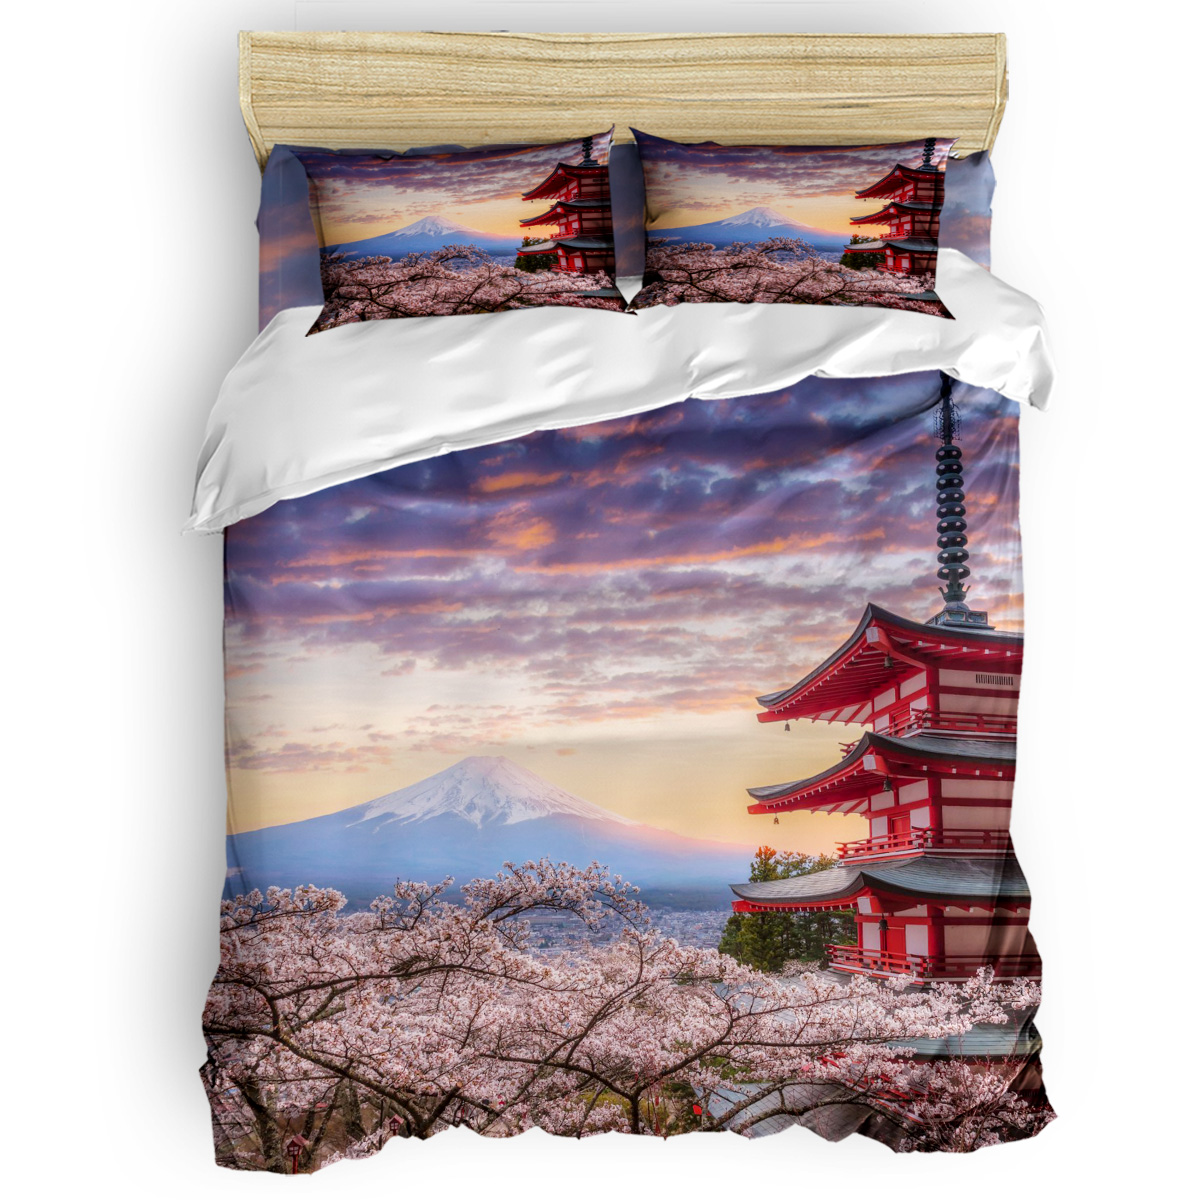 Soluk pembe yorgan kapak seti, kiraz çiçekleri ile sakura şubesi ihale Japon baharı, dekoratif 3 parçalı yatak seti, kral boyutu